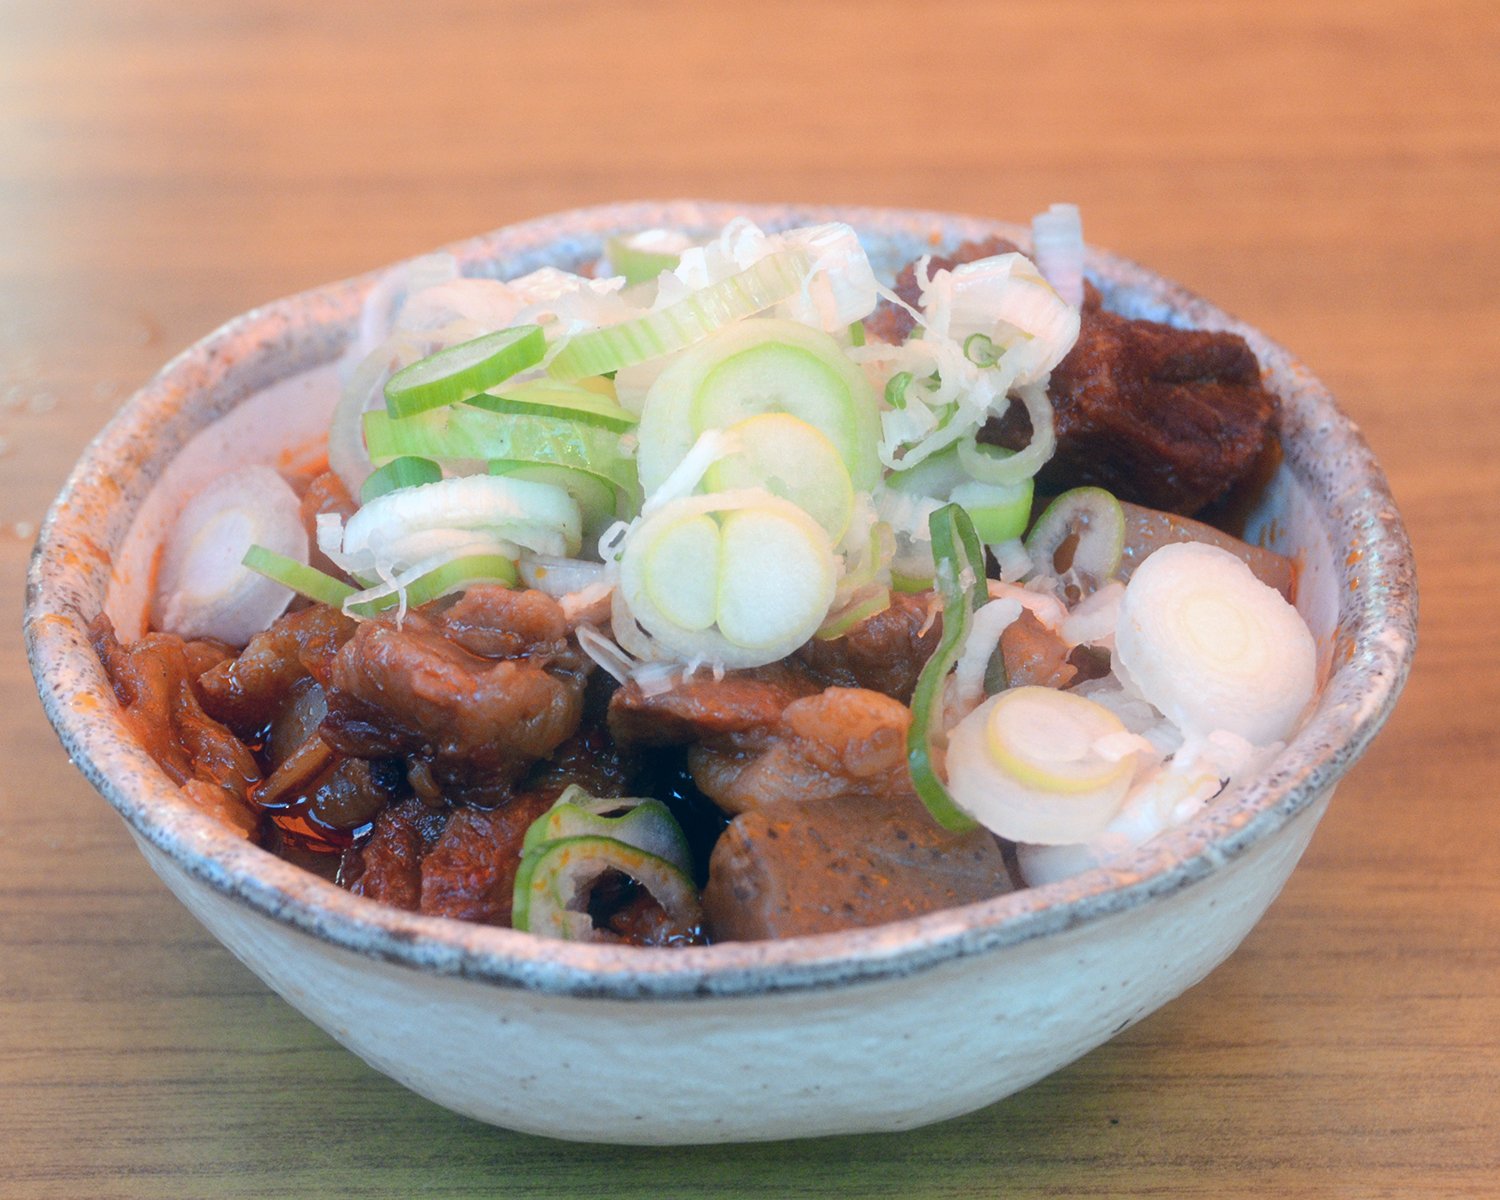 お店の1番人気メニュー韓国風牛すじ煮650円。開発当時としては珍しく韓国風のピリ辛テイストにしたところ、ダントツのヒットメニューに。